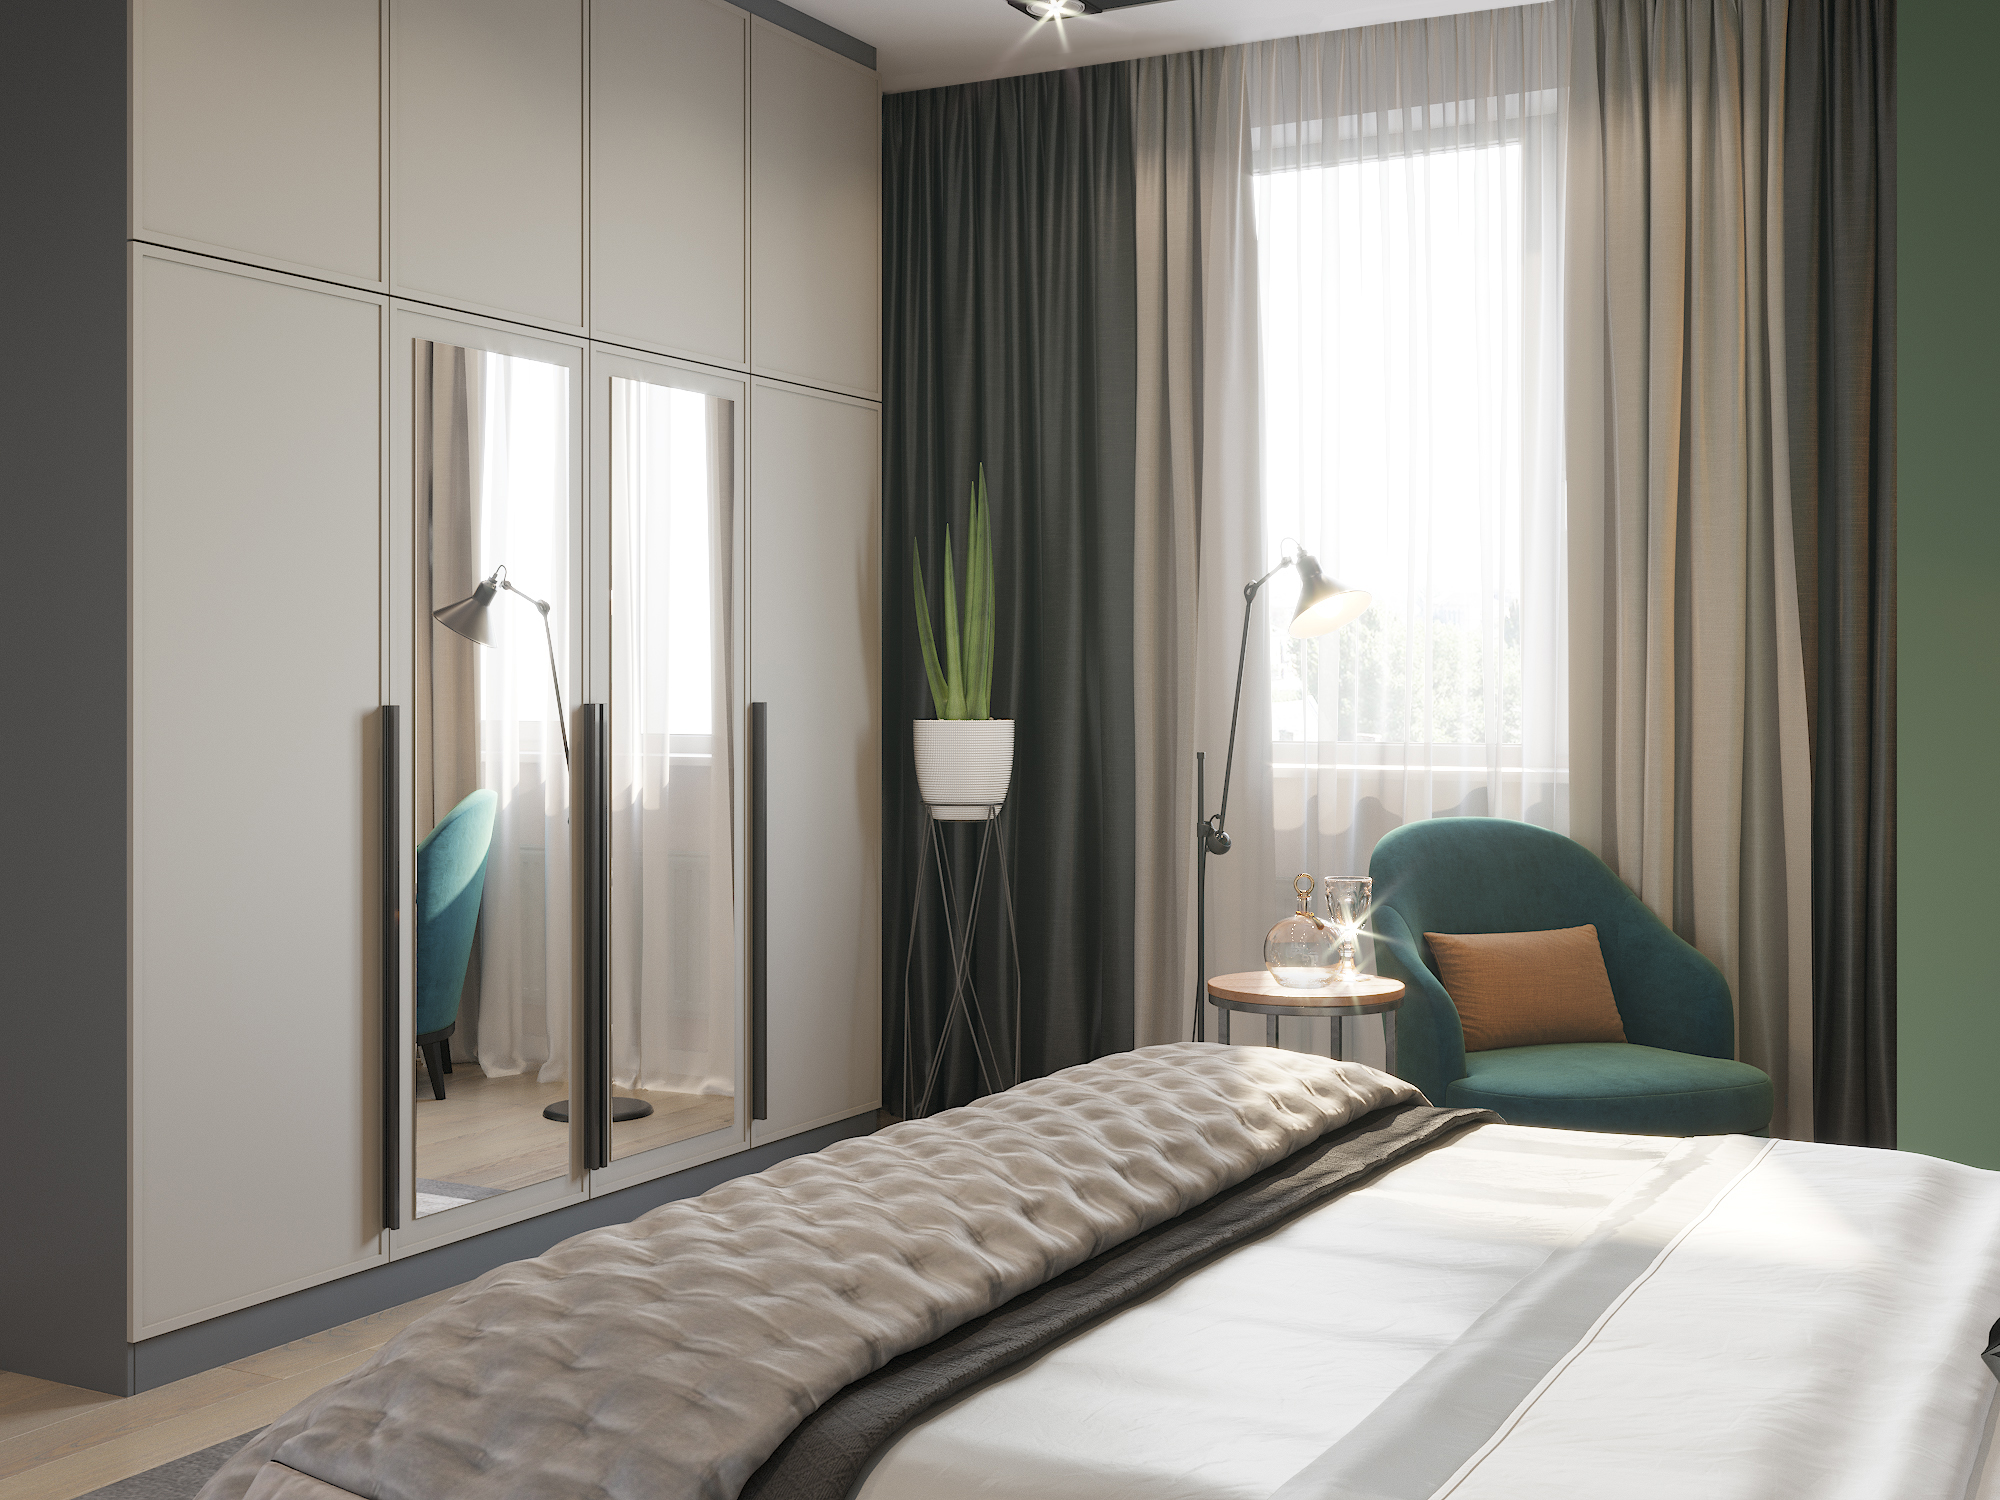 Bedroom in emerald tones in 3d max corona render image